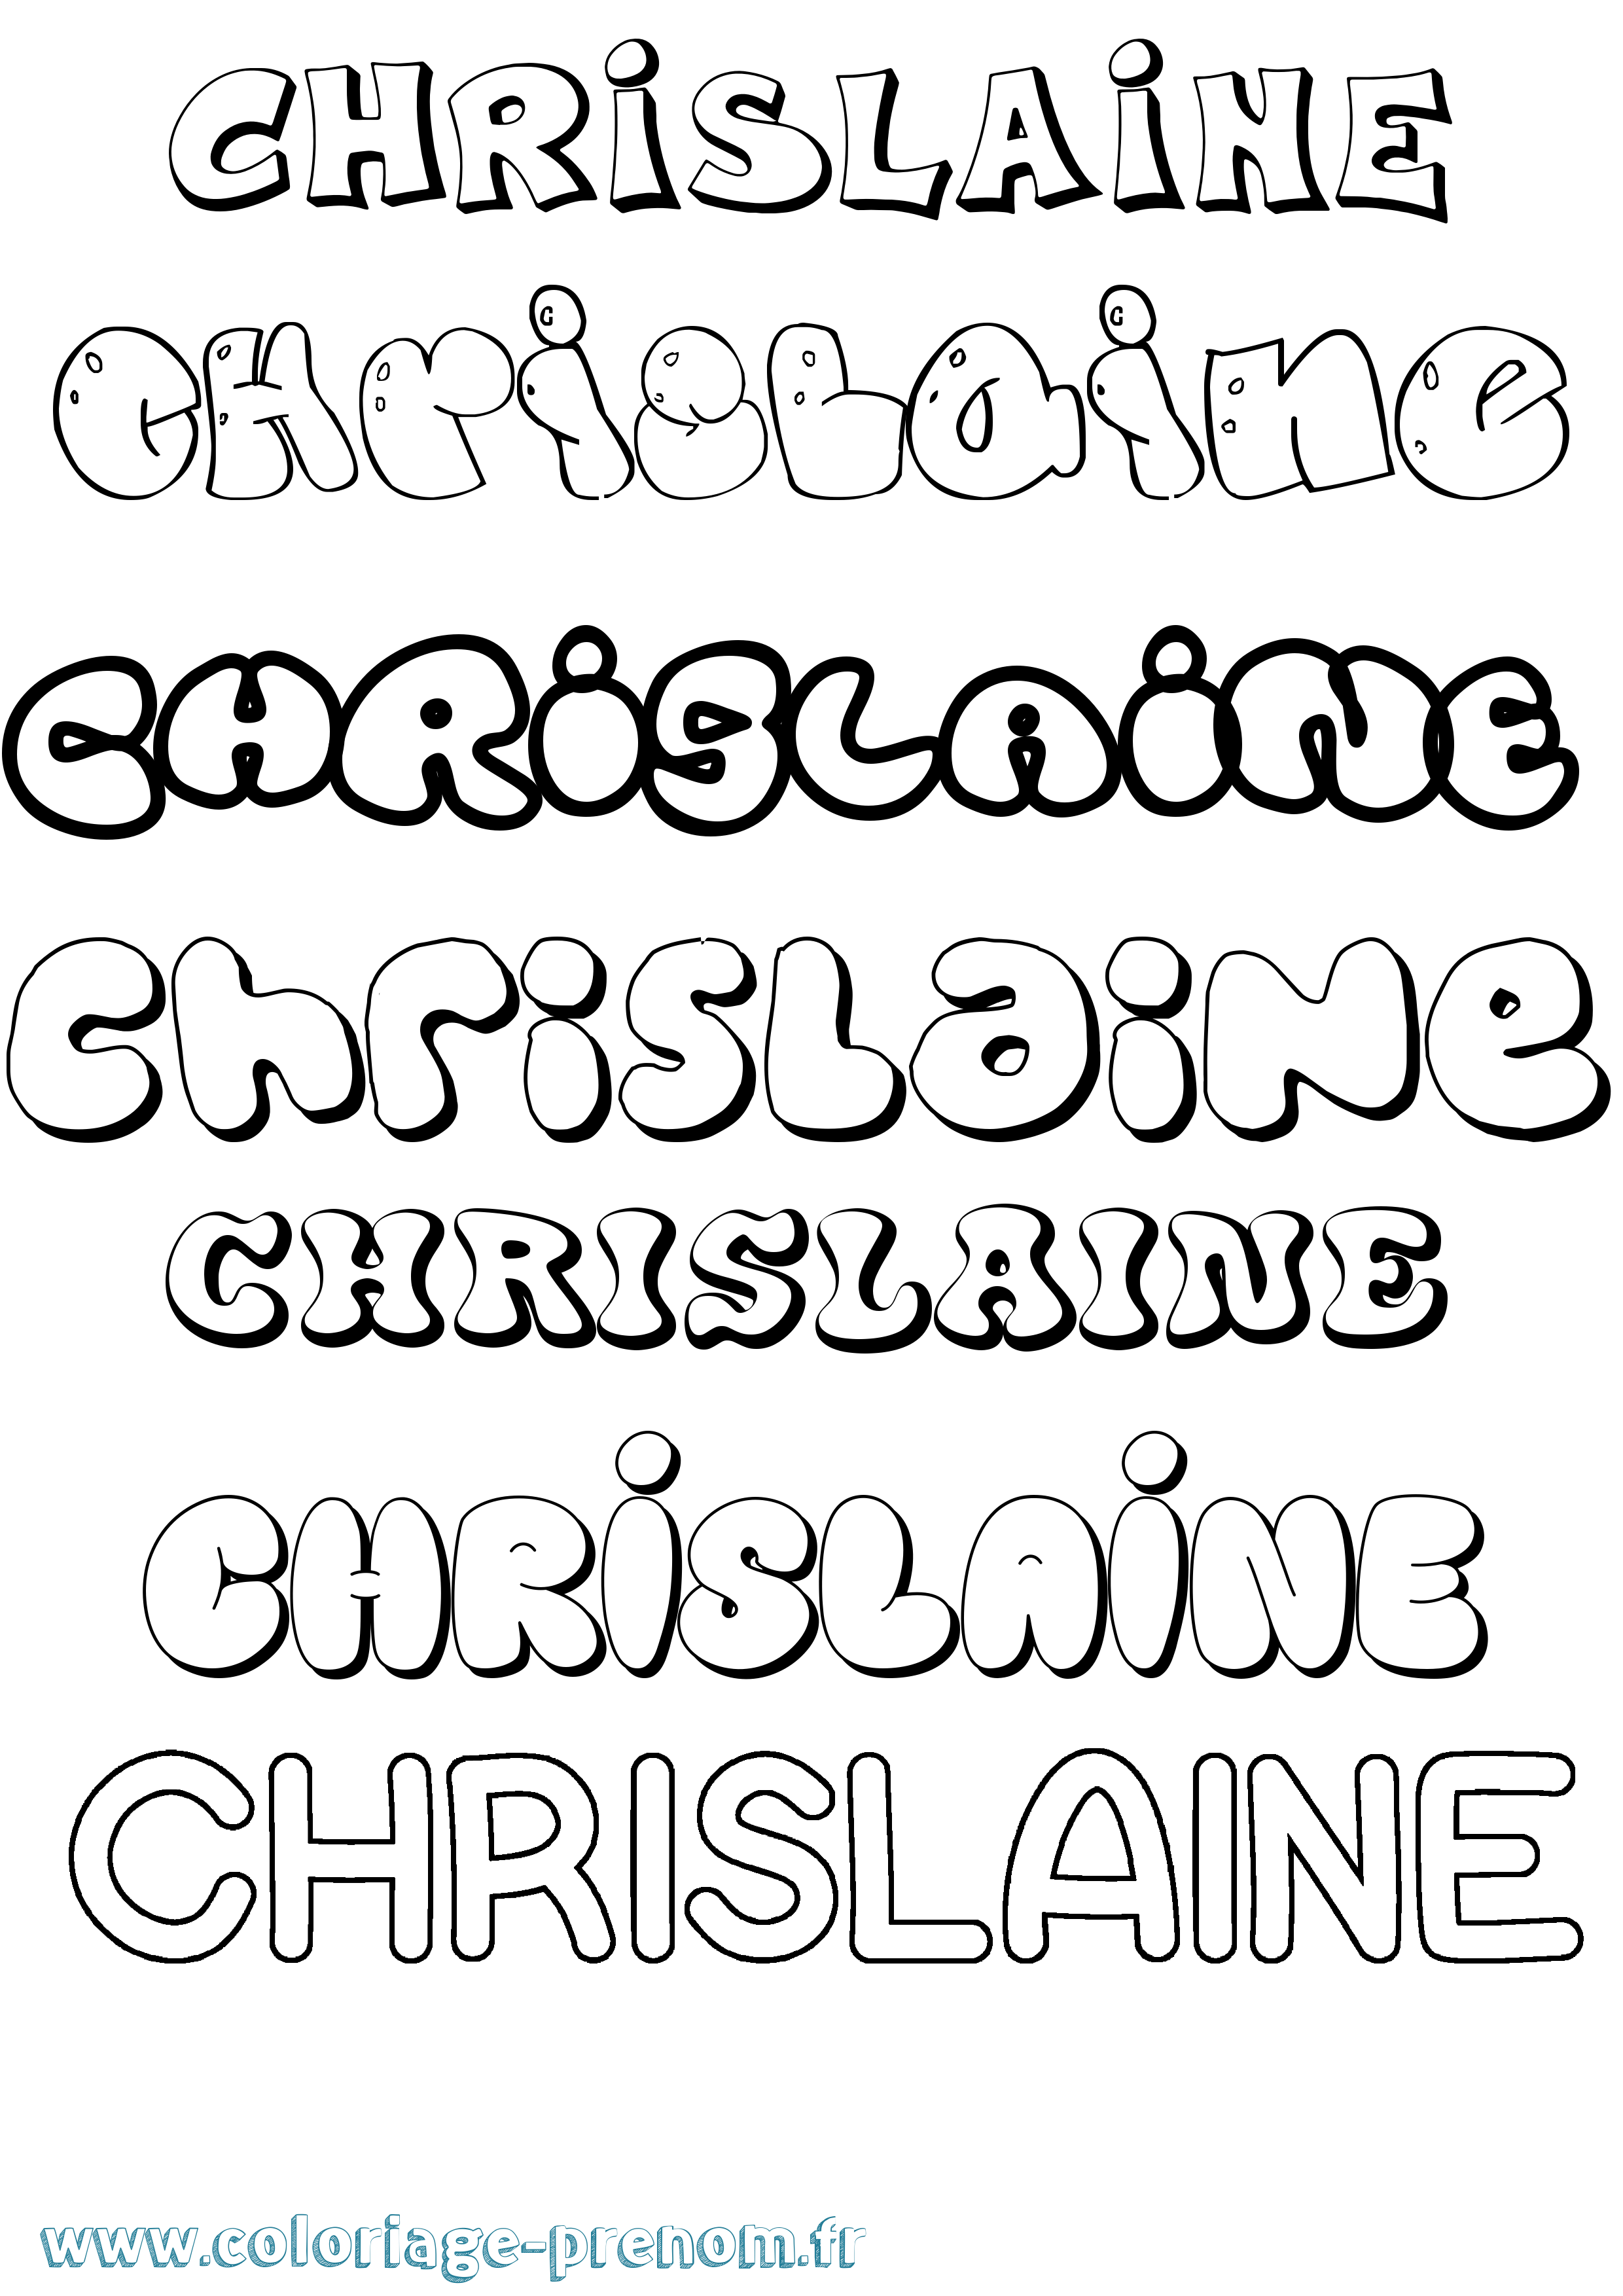 Coloriage prénom Chrislaine Bubble